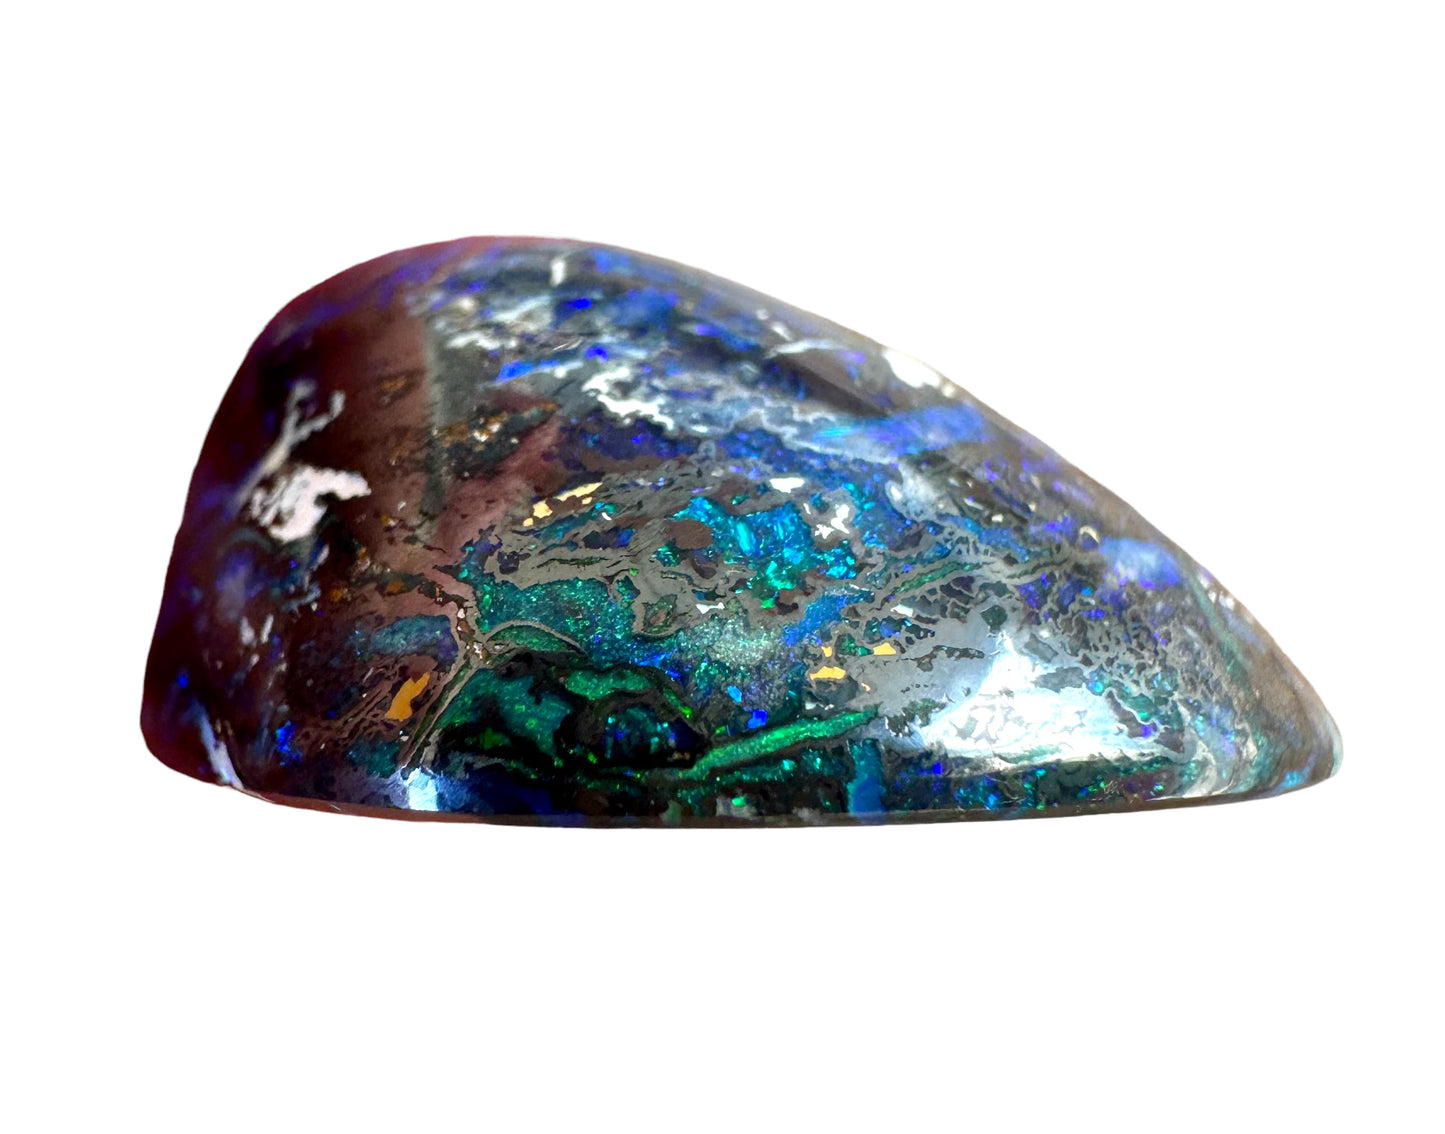 Australian Boulder opal - Opal Essence Wholesalers 